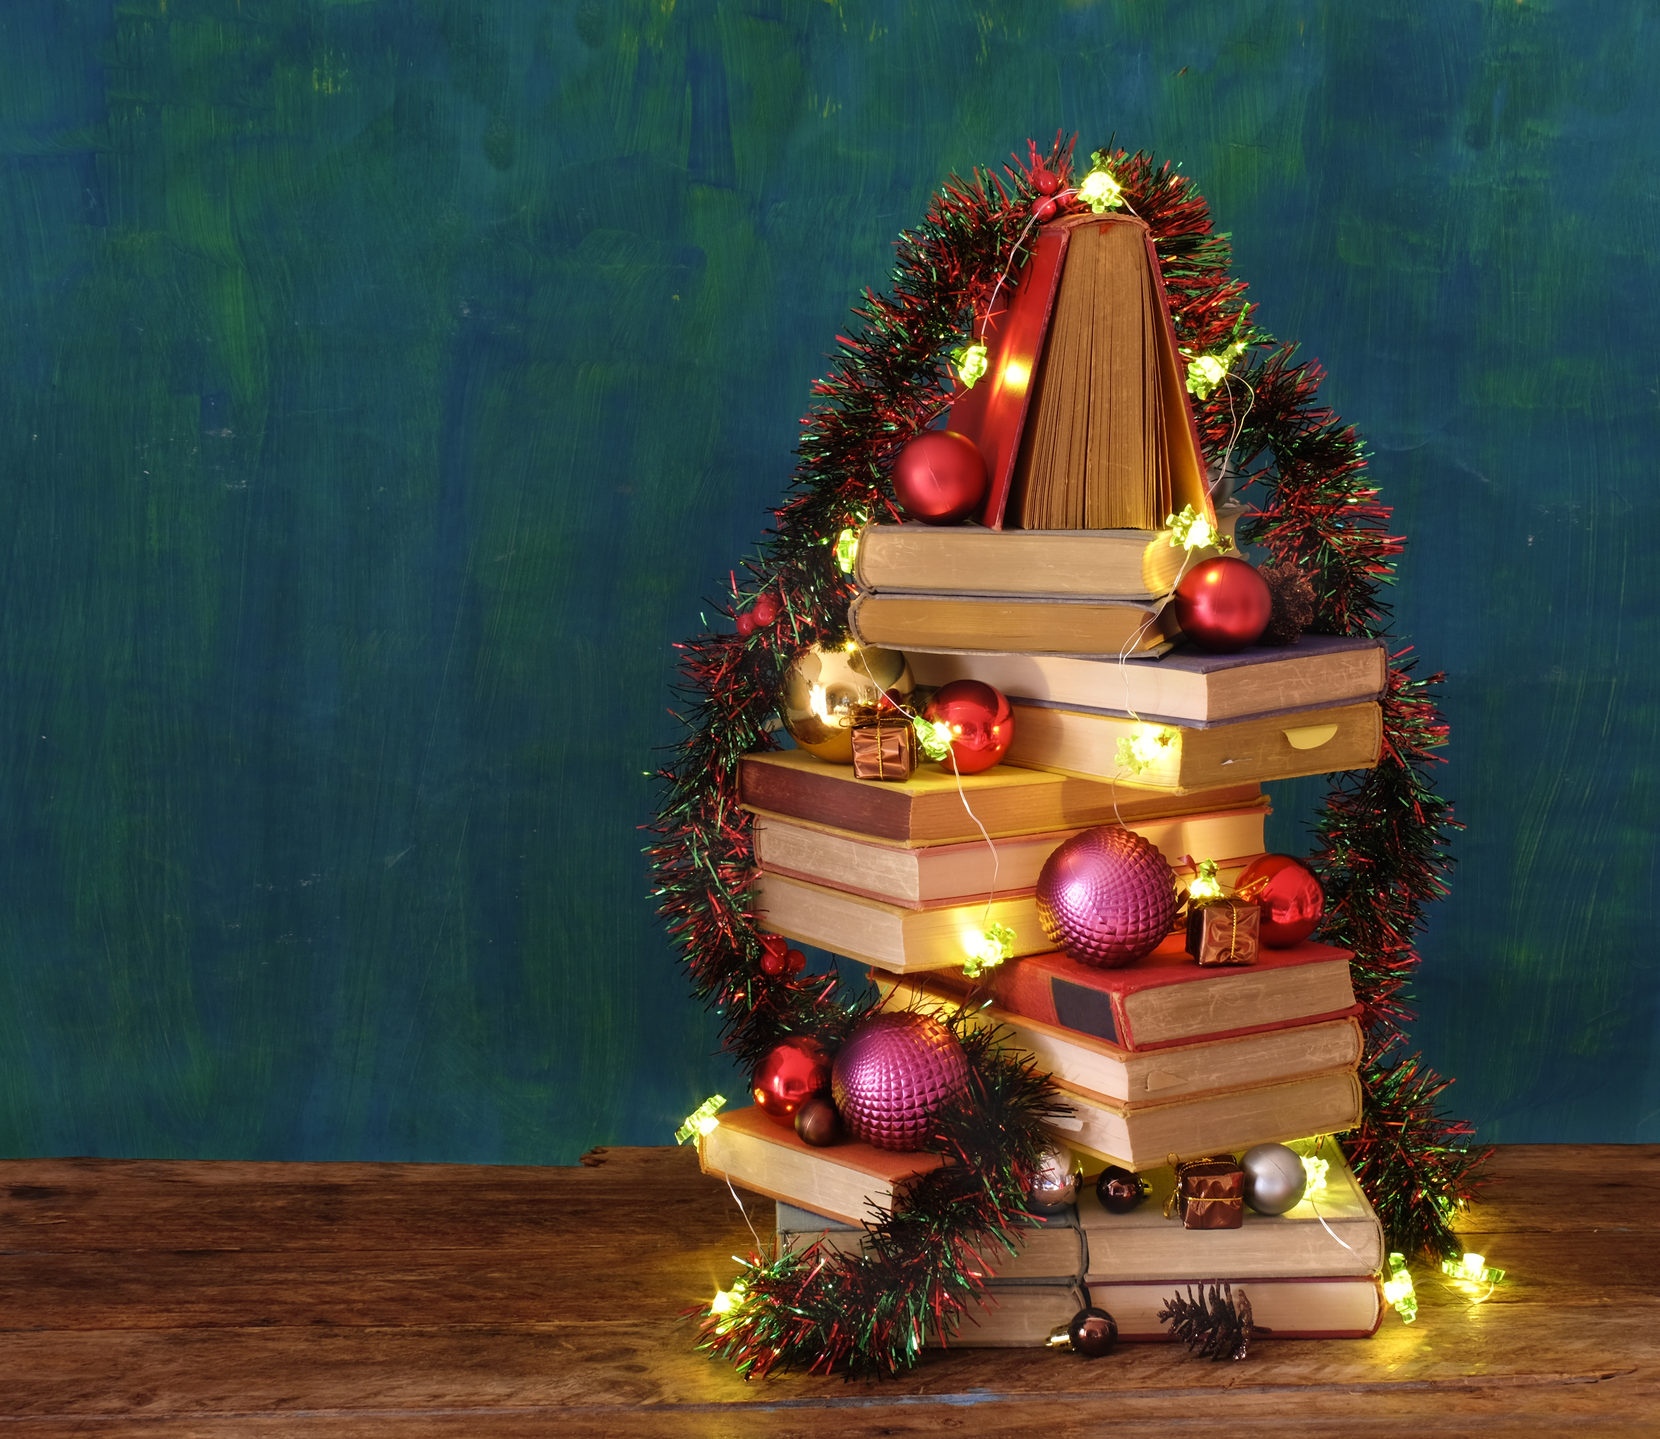 Festão também pode ser um adereço a mais para dar um toque especial para a sua árvore de Natal com livros. 